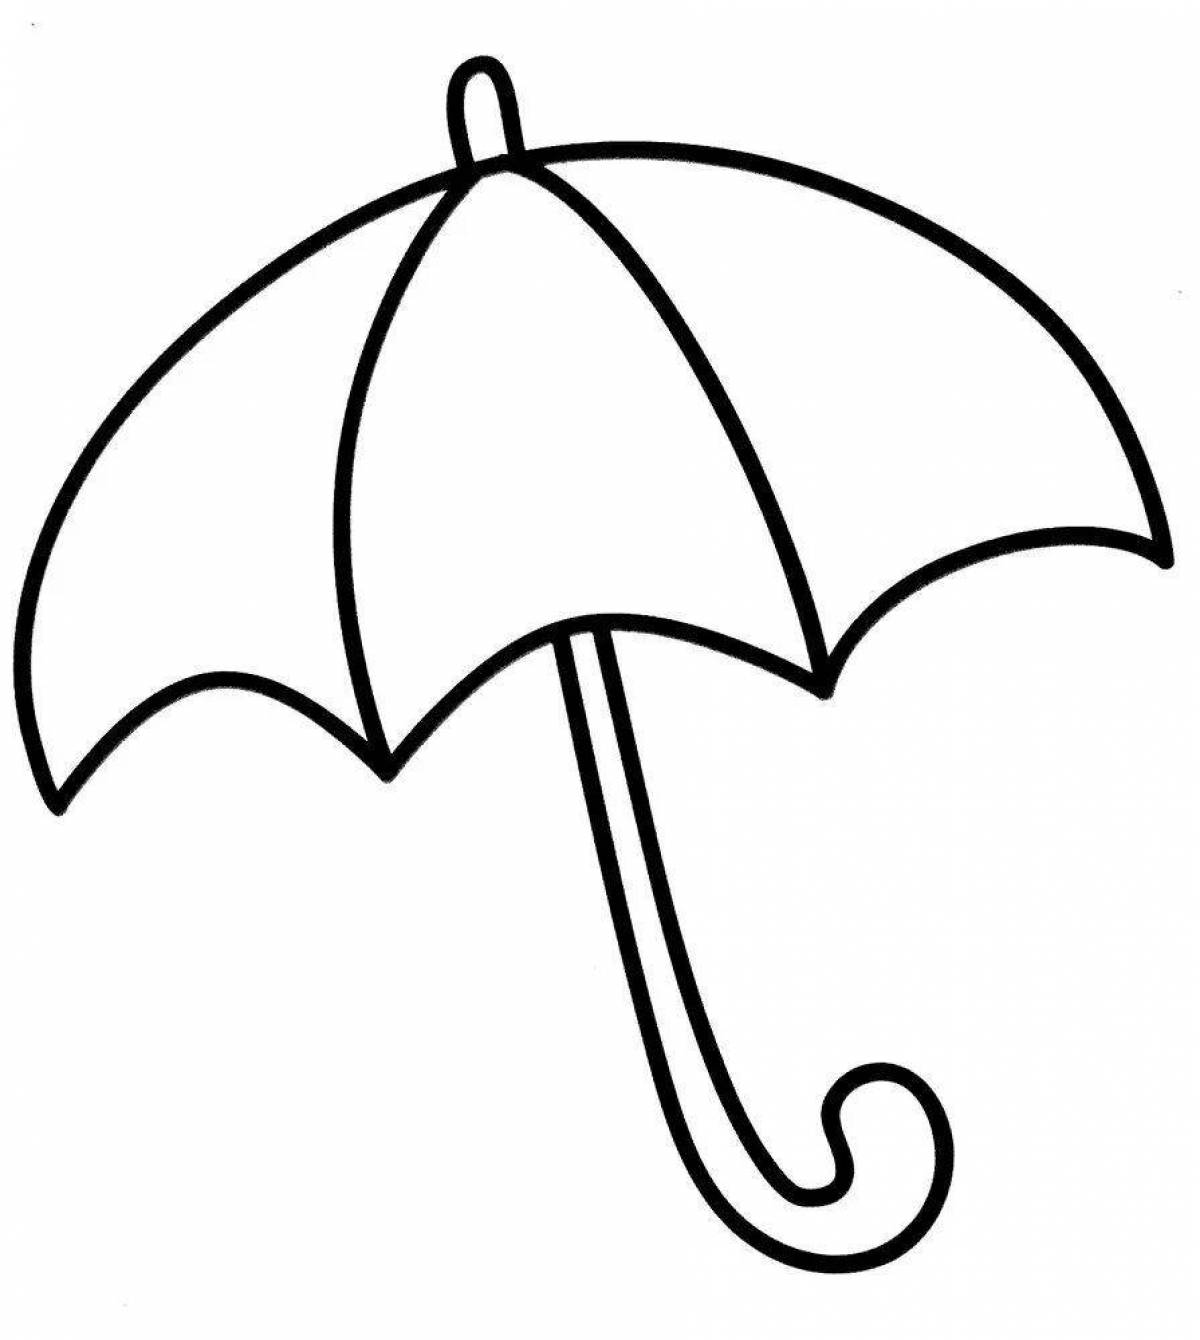 Красочная, красочная и яркая раскраска зонтика для детей